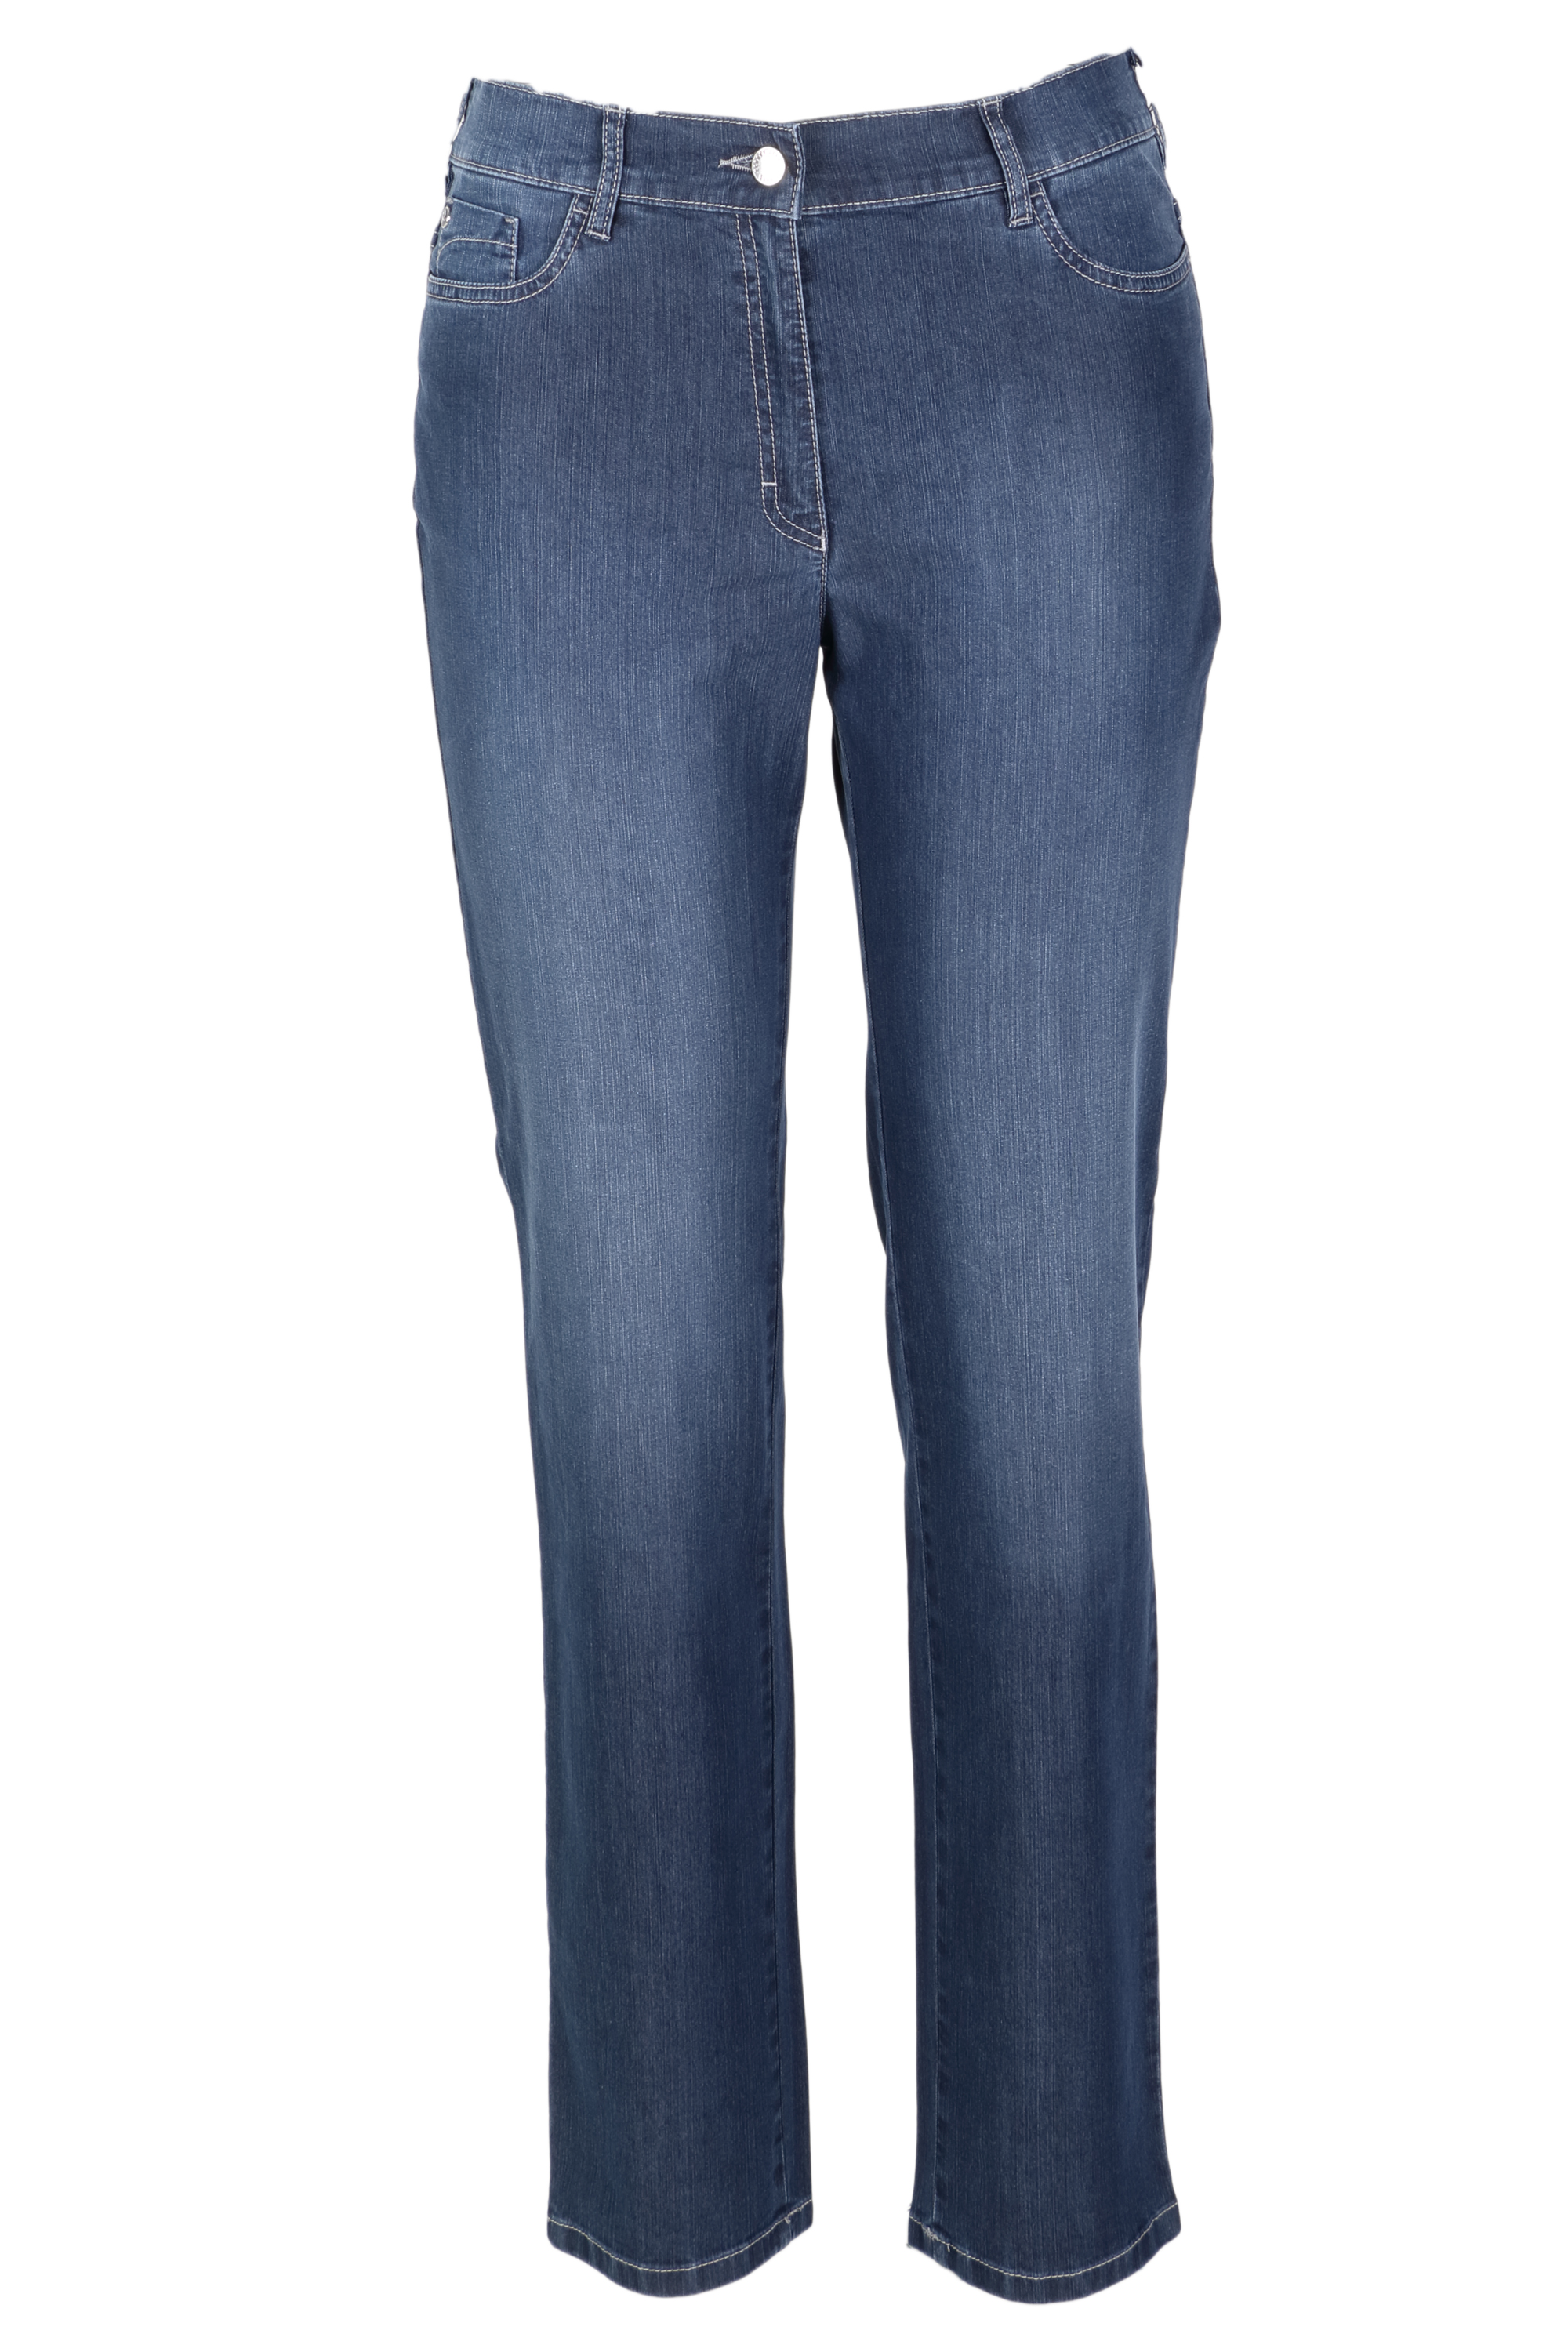 Zerres Damen Jeans Greta sommerliche Qualität - blau 44